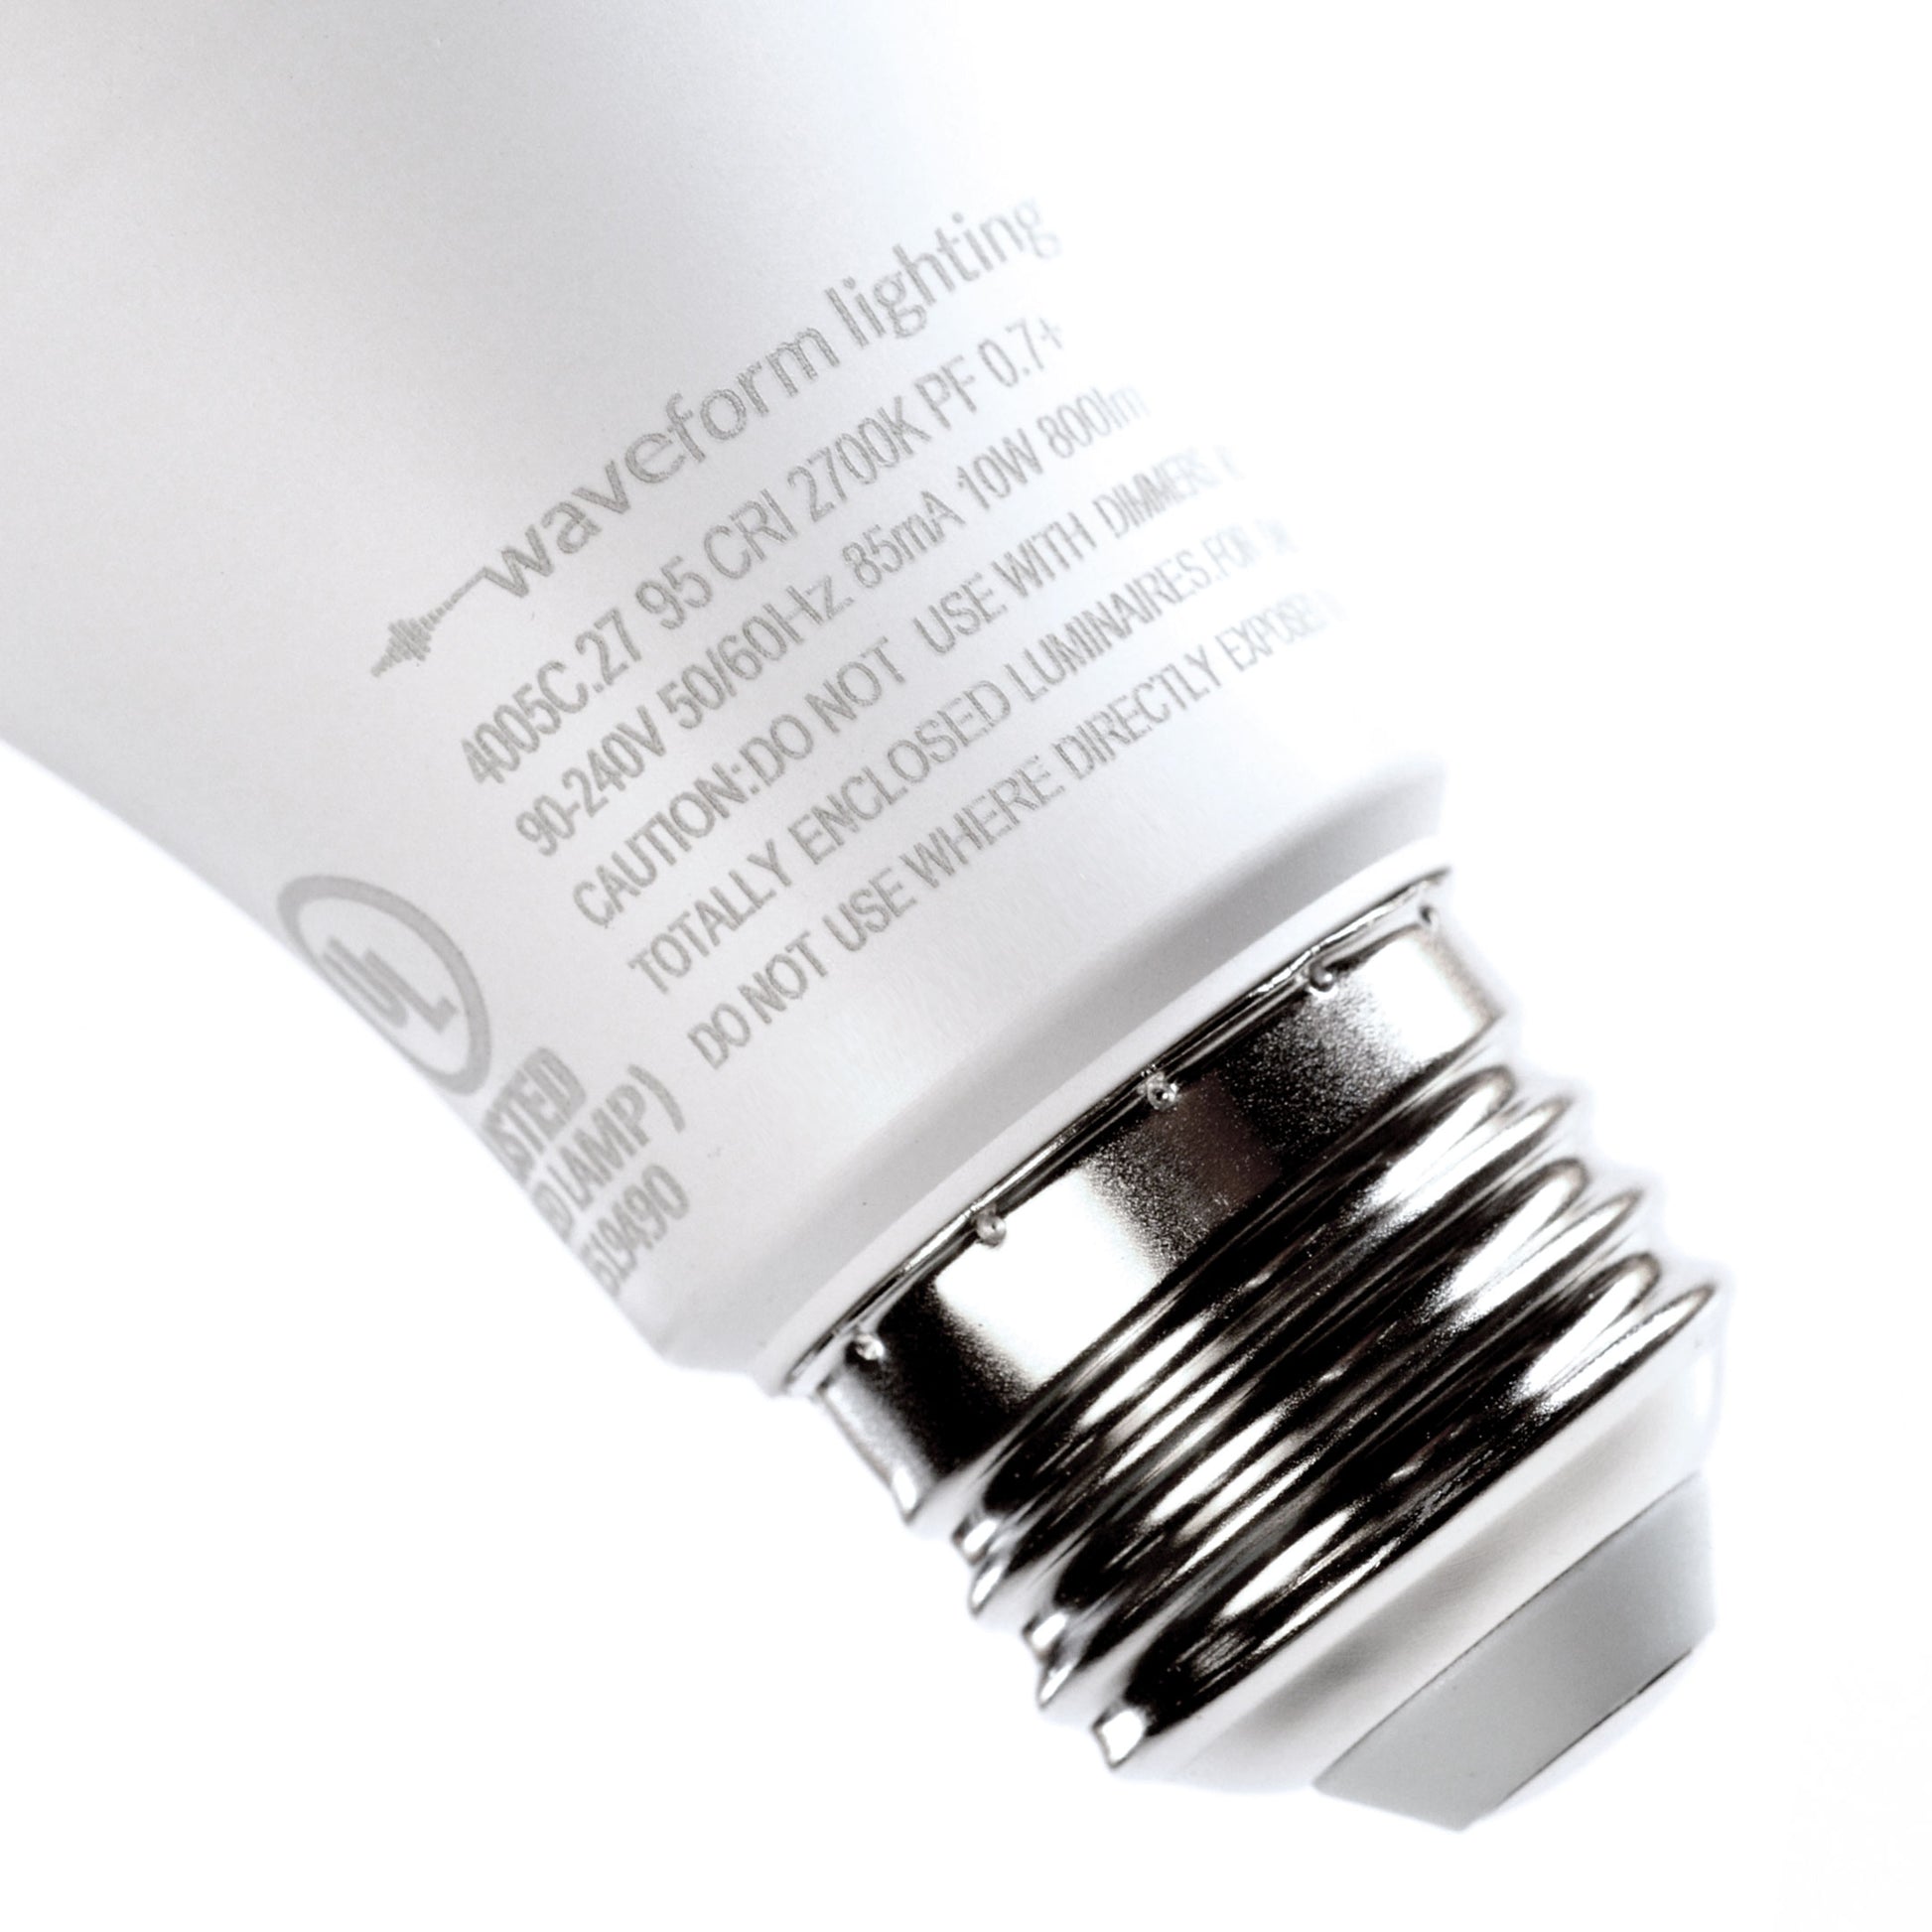 CENTRIC DAYLIGHT™ Full Spectrum Flicker-Free T8 LED Tube Light – Waveform  Lighting